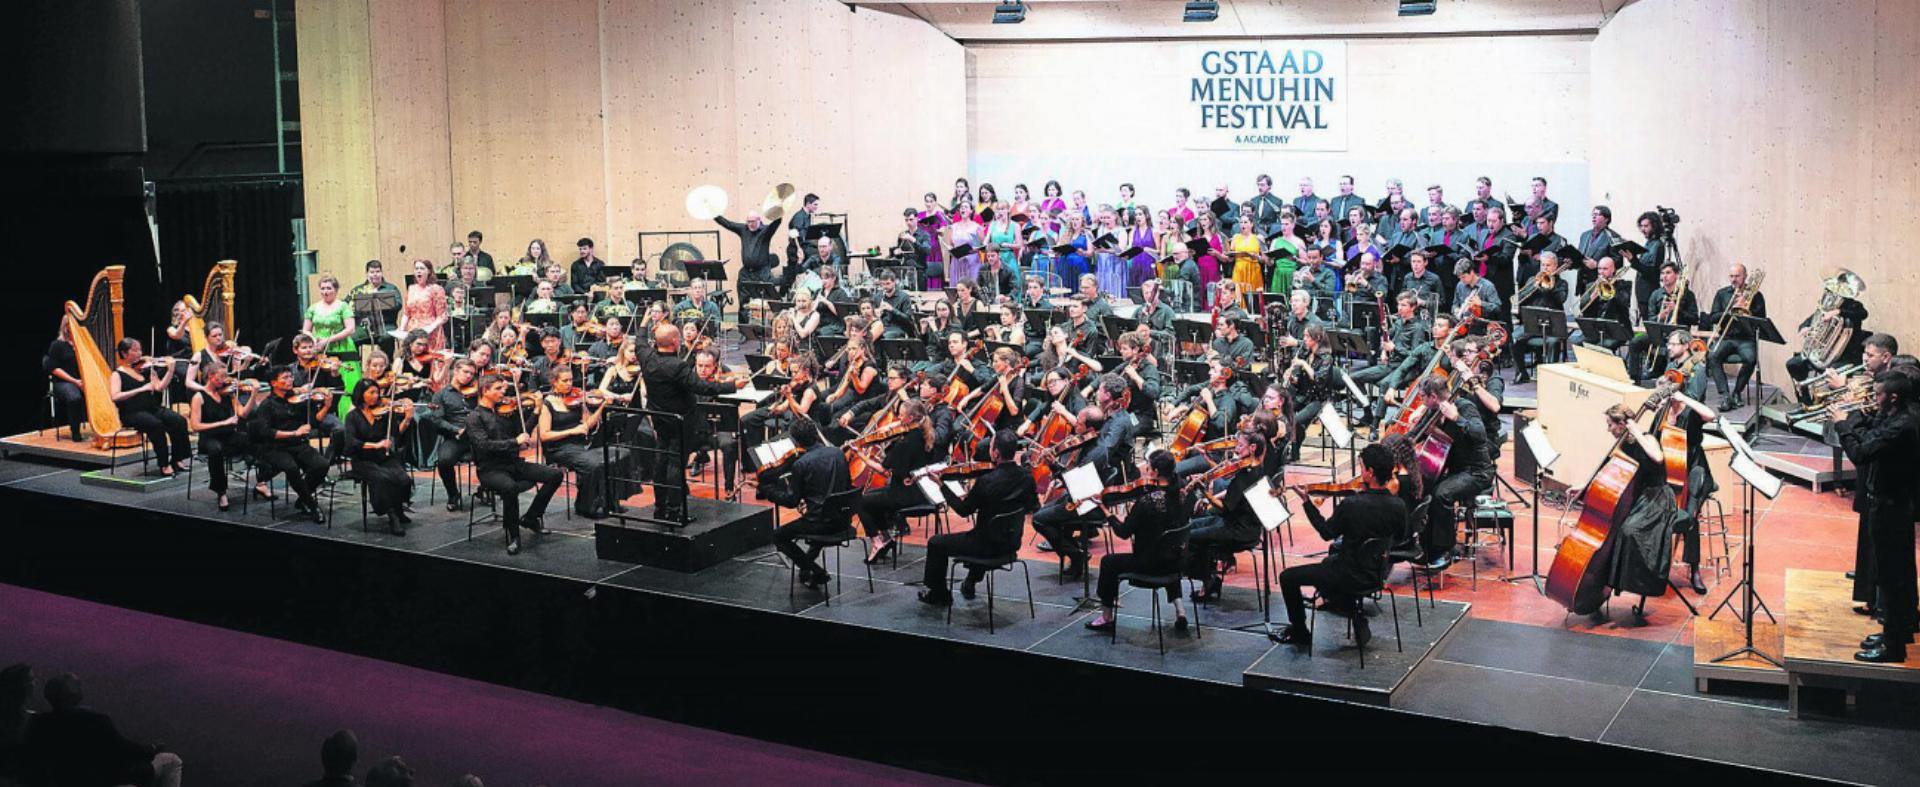 Orchester und Chor füllten die Bühne des Festivalzeltes total aus. FOTOS: RAPHAEL FAUX/GSTAADPHOTOGRAPHY.COM